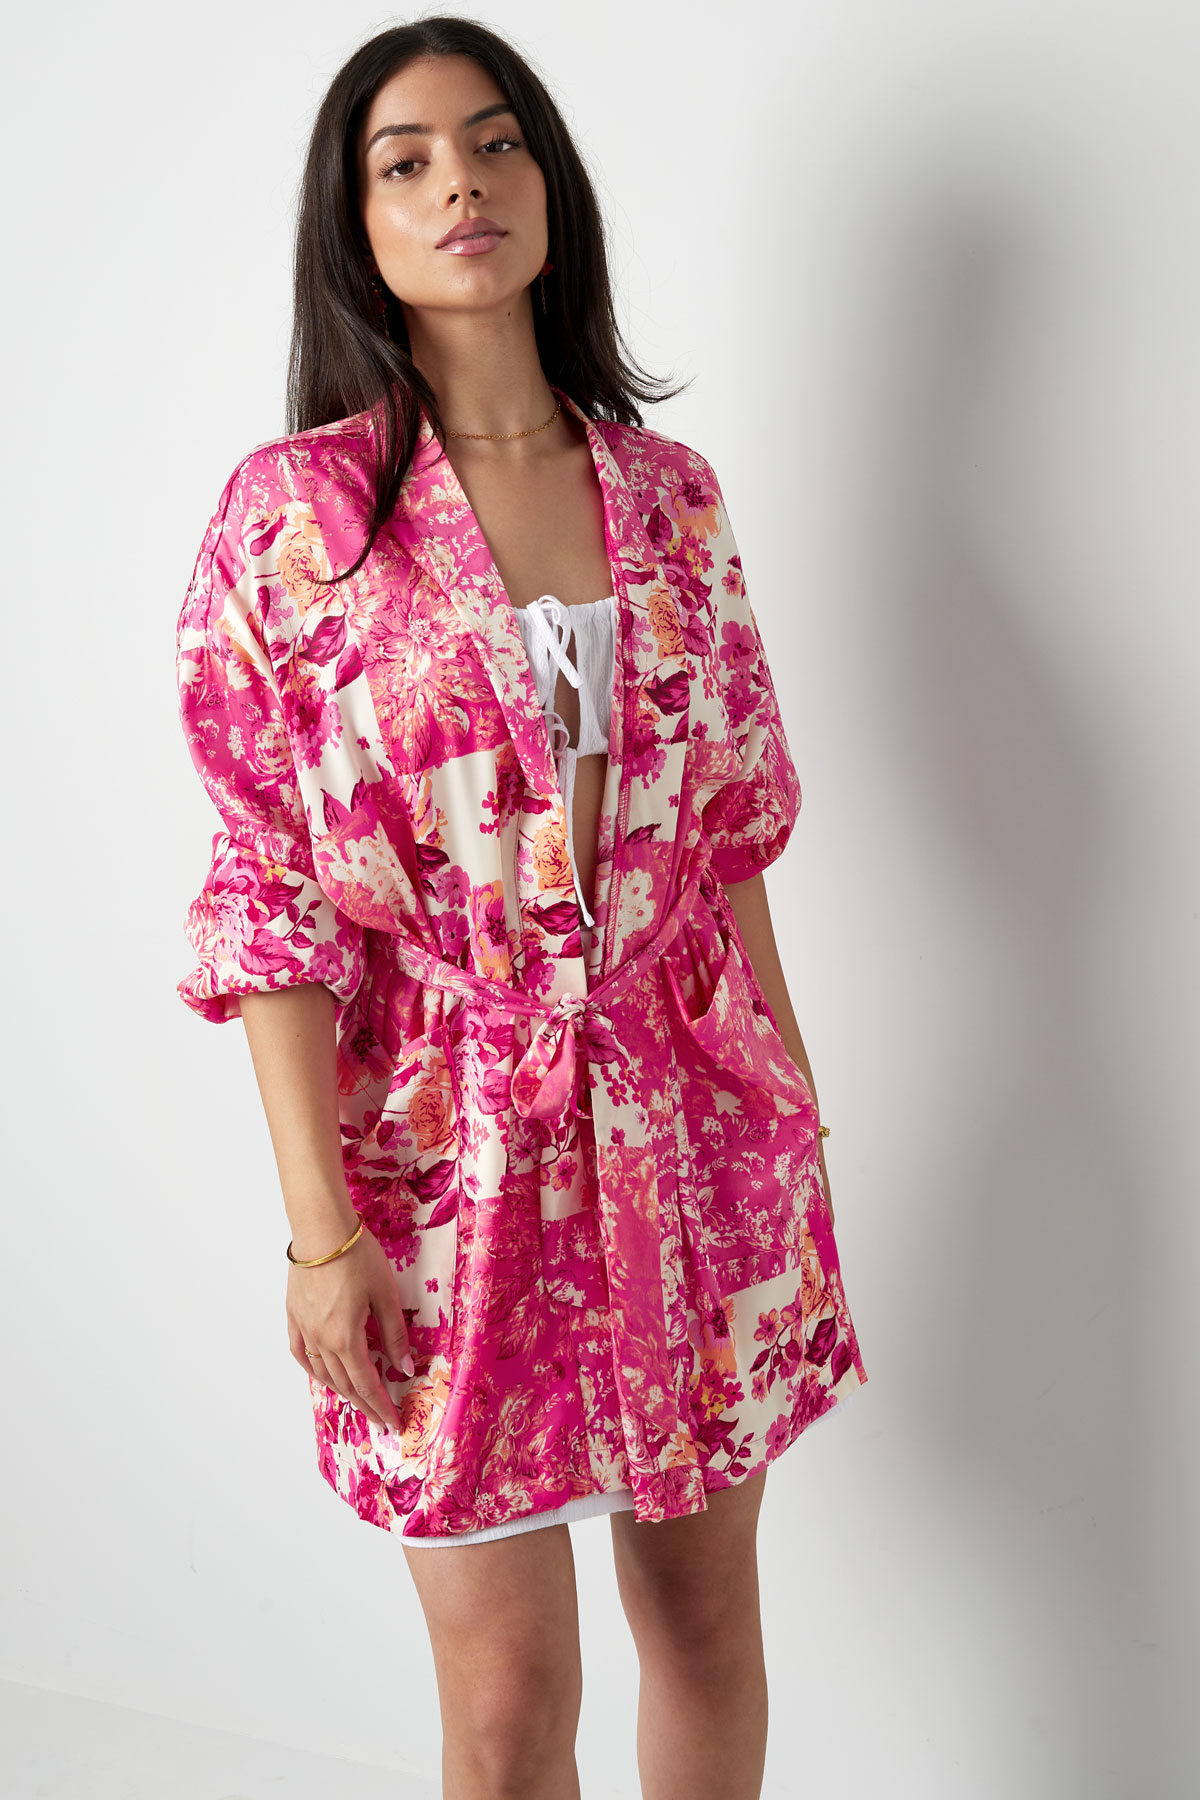 Kısa kimono yeşil çiçekler - çoklu Resim5